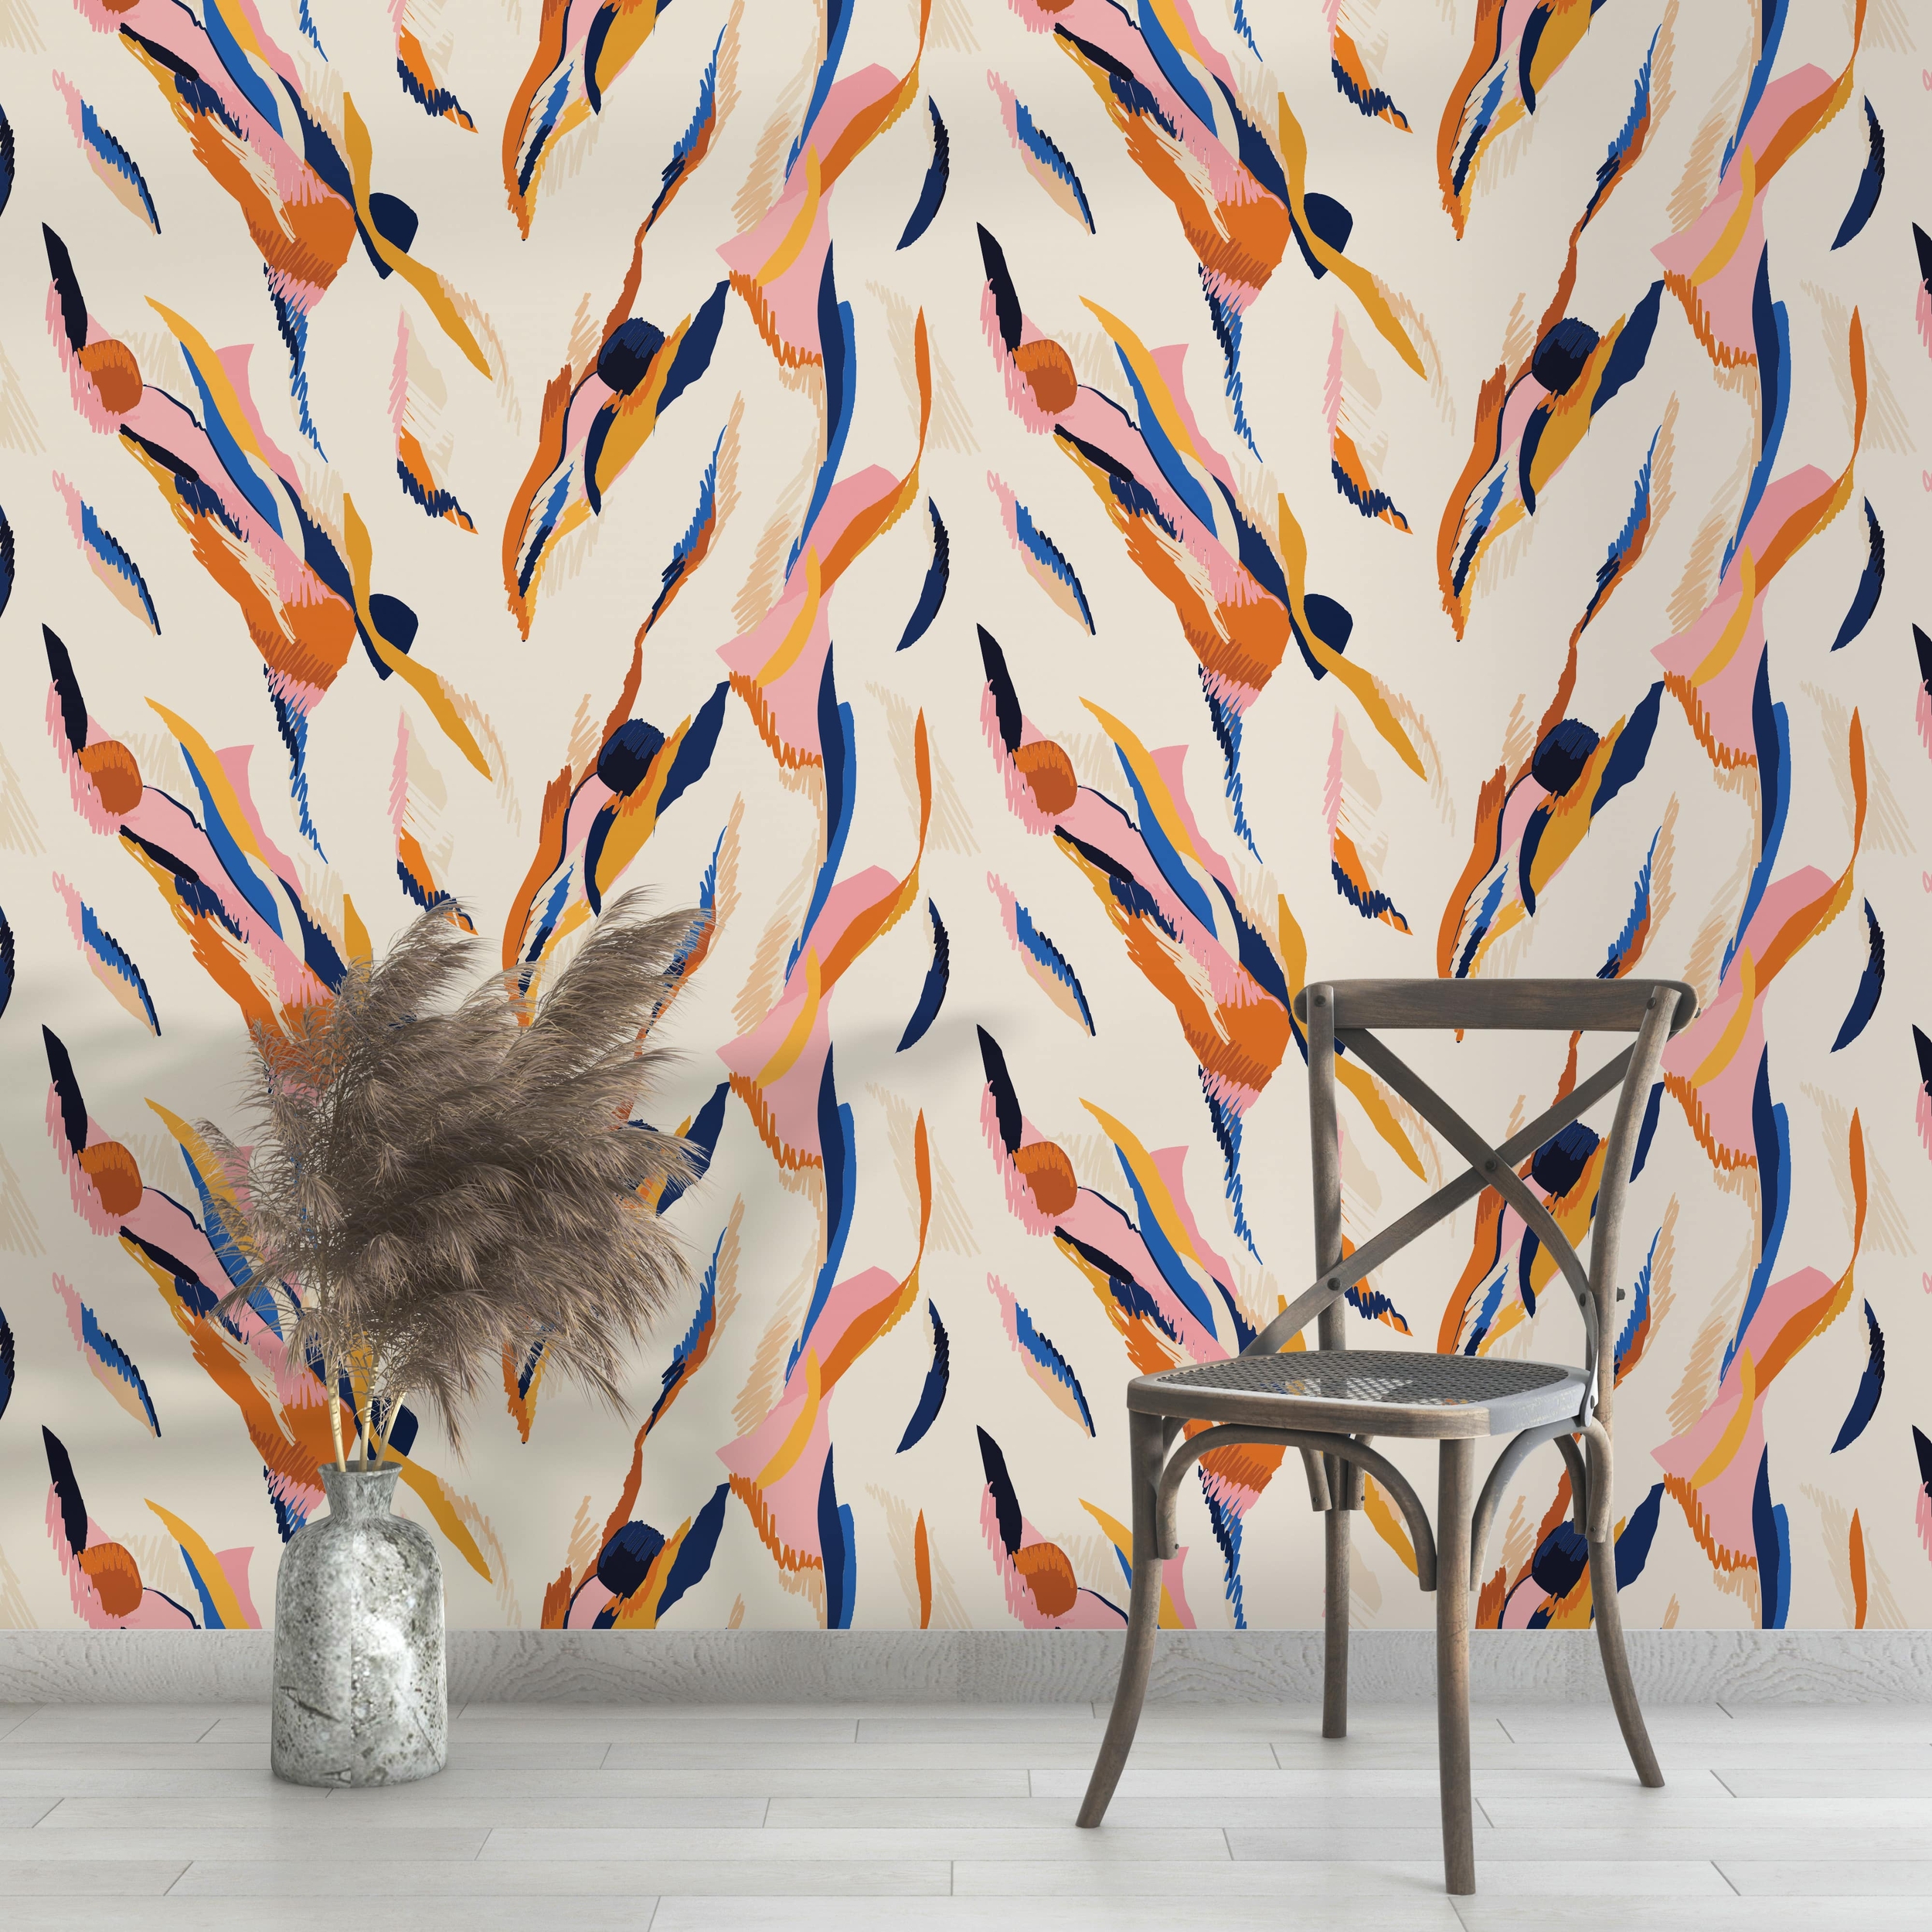 PP31-papier-peint-adhesif-decoratif-revetement-vinyle-motifs-art-contemporain-renovation-meuble-mur-4